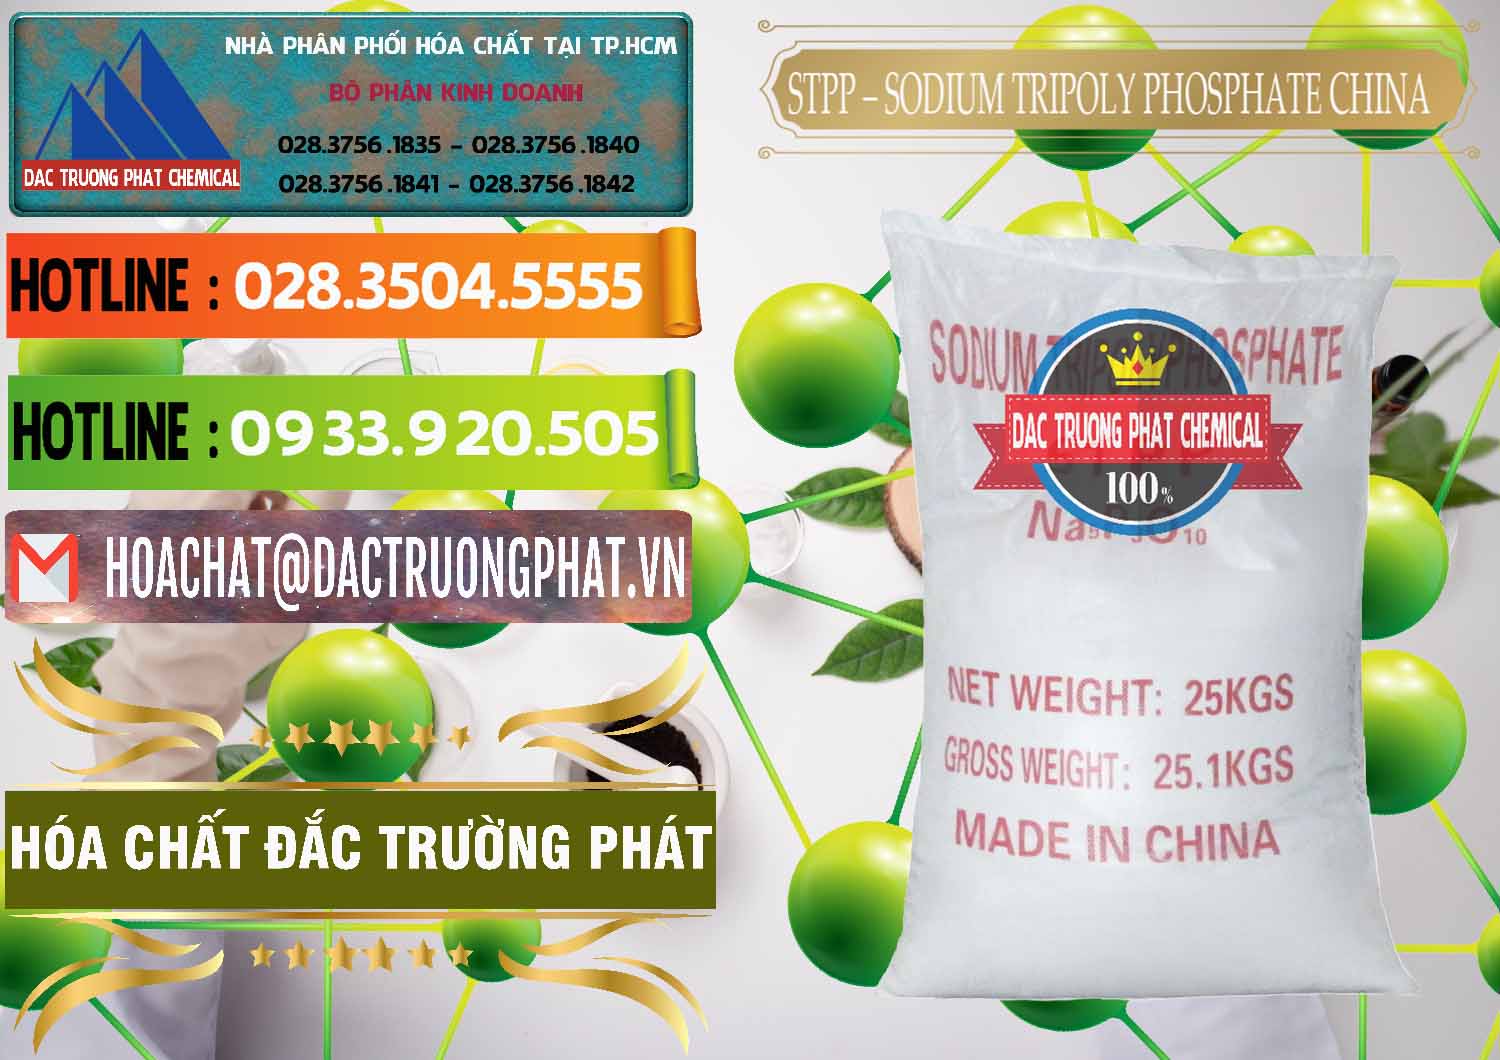 Chuyên kinh doanh & bán Sodium Tripoly Phosphate - STPP 96% Chữ Đỏ Trung Quốc China - 0155 - Nơi cung ứng và phân phối hóa chất tại TP.HCM - cungcaphoachat.com.vn